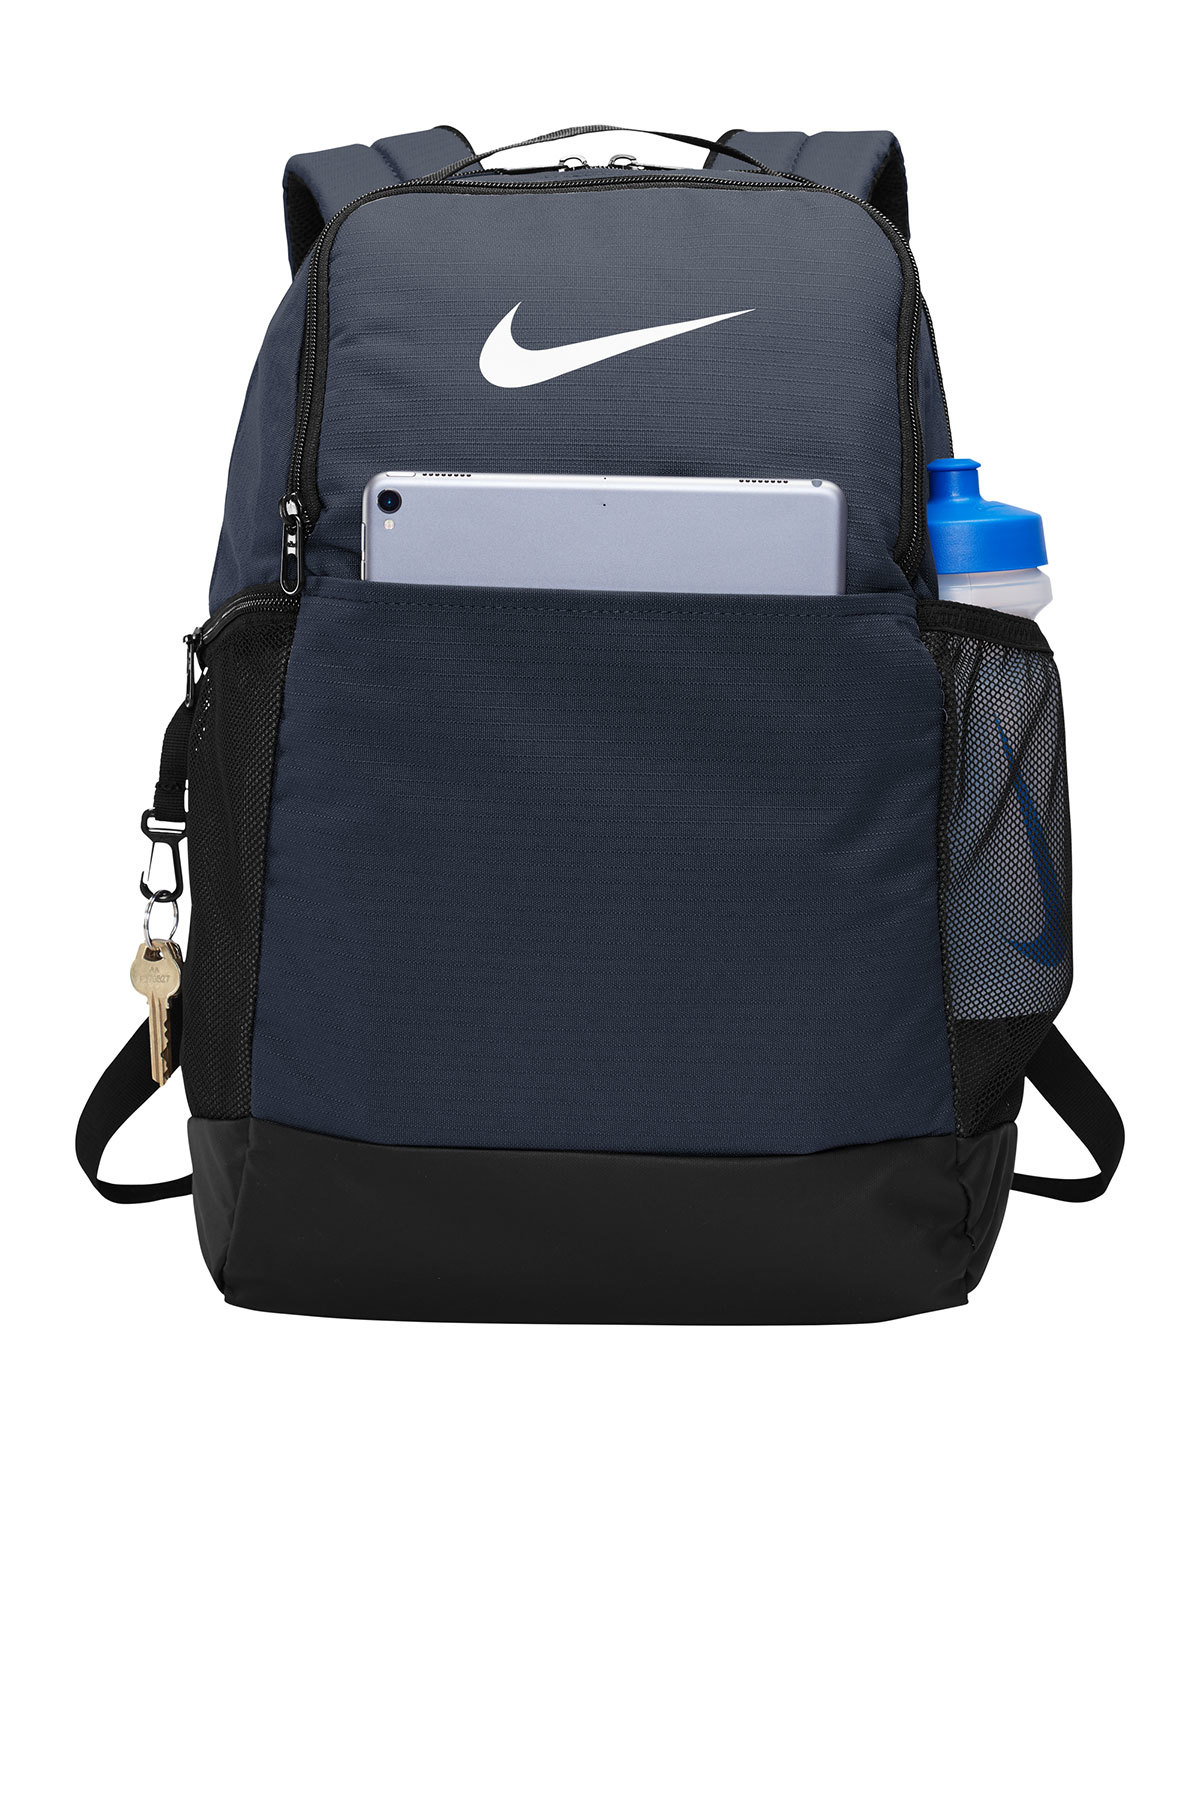 blue nike brasilia backpack